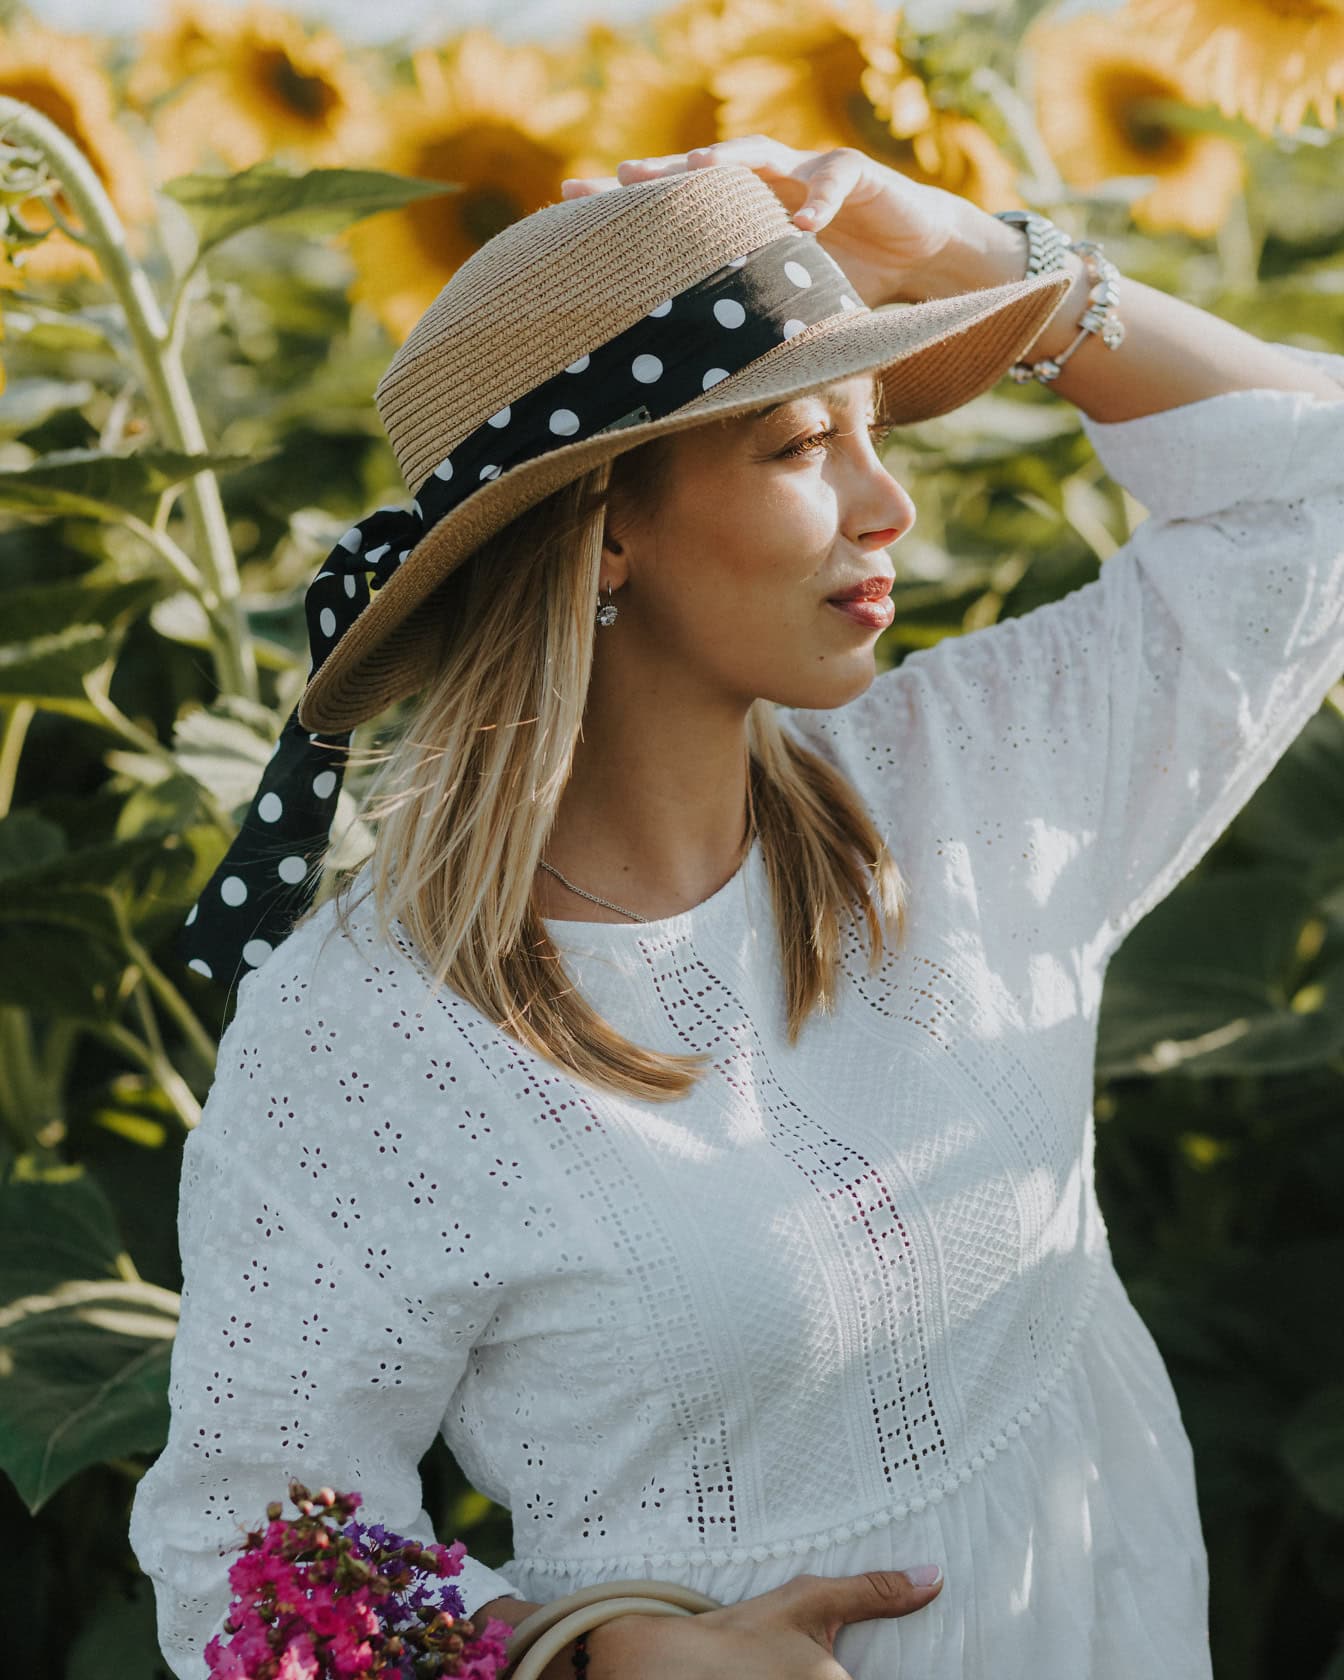 Retrato de uma jovem do campo usando um chapéu no campo de girassóis